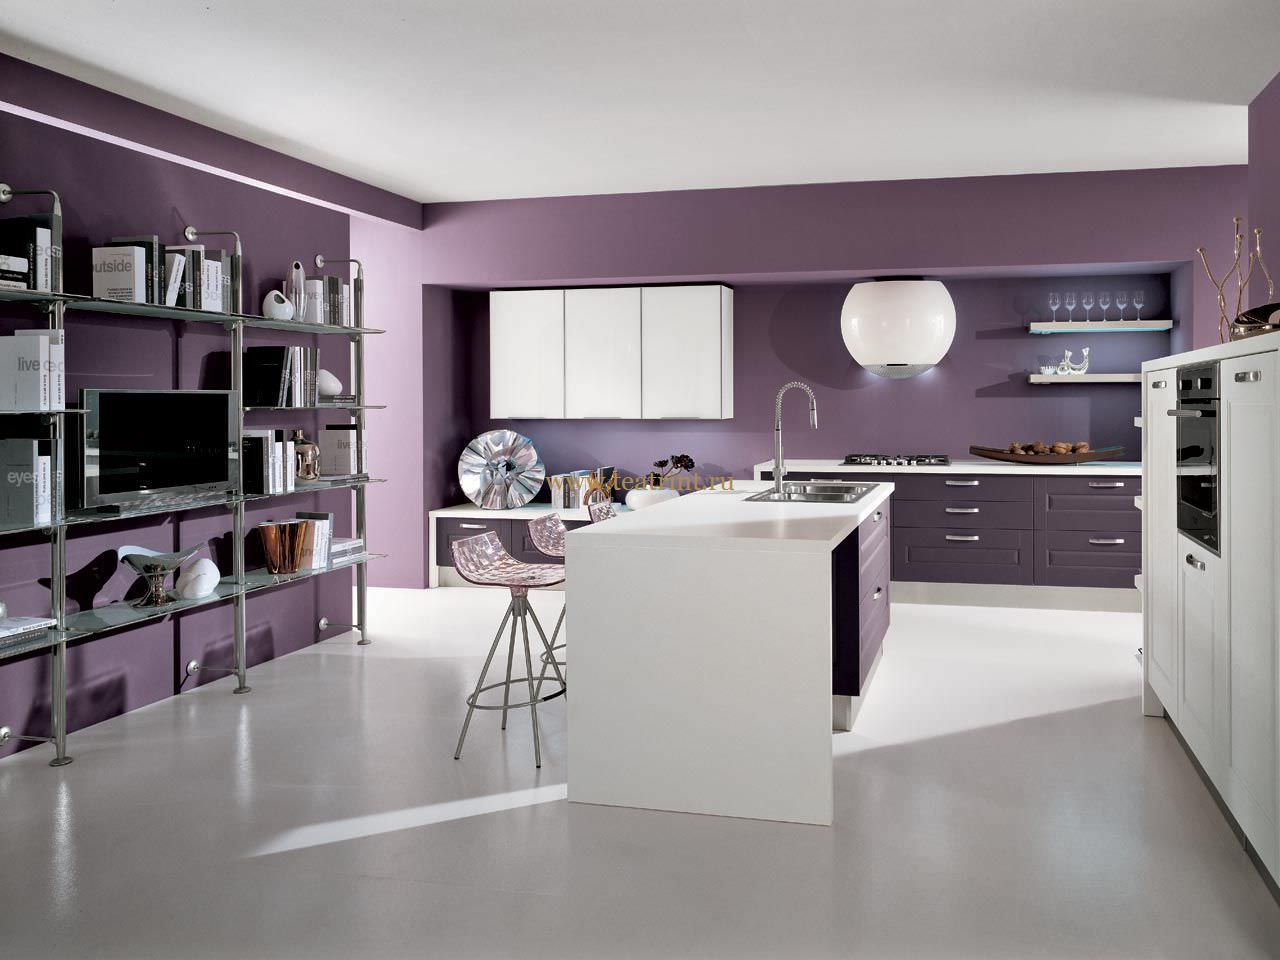 cucina in stile moderno in viola